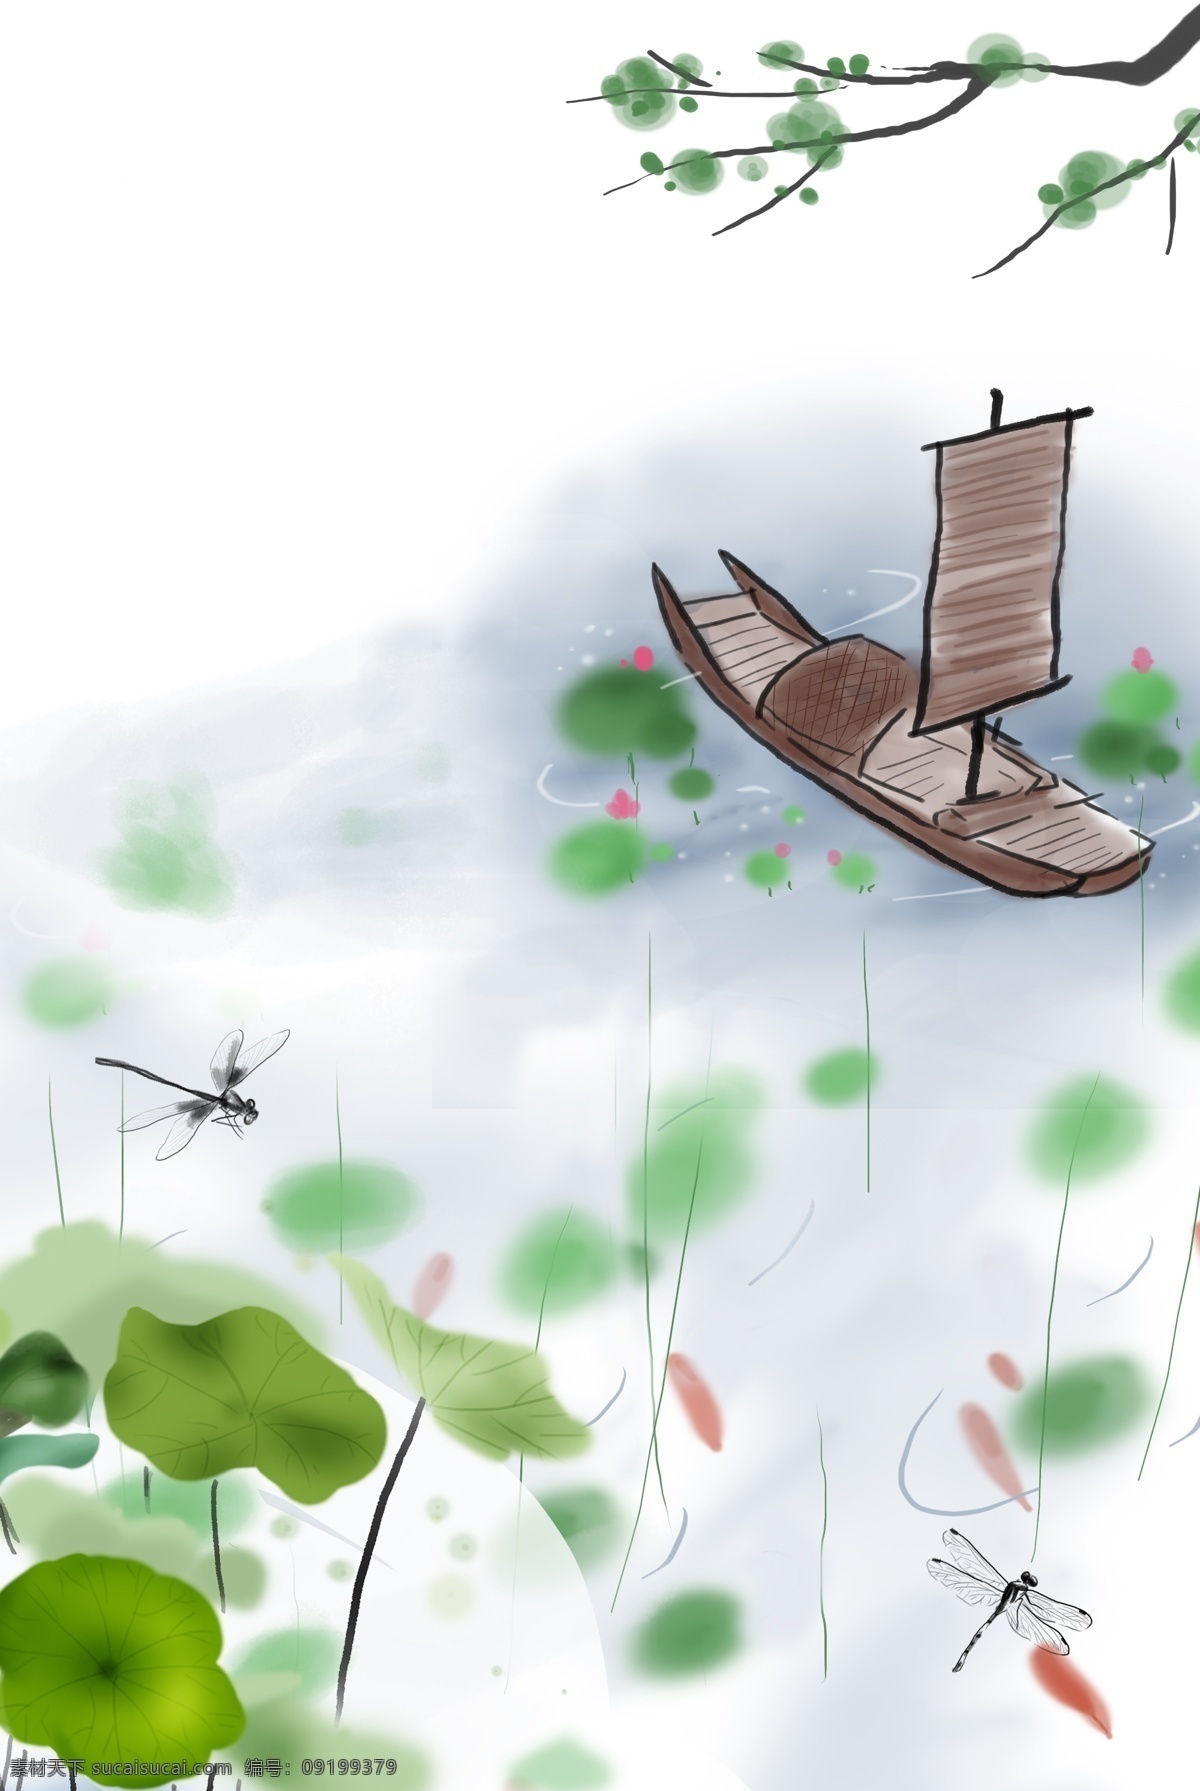 夏天 荷塘 场景 背景 夏日 荷叶 荷花 蜻蜓 树叶 鱼群 渔船 简约 手绘